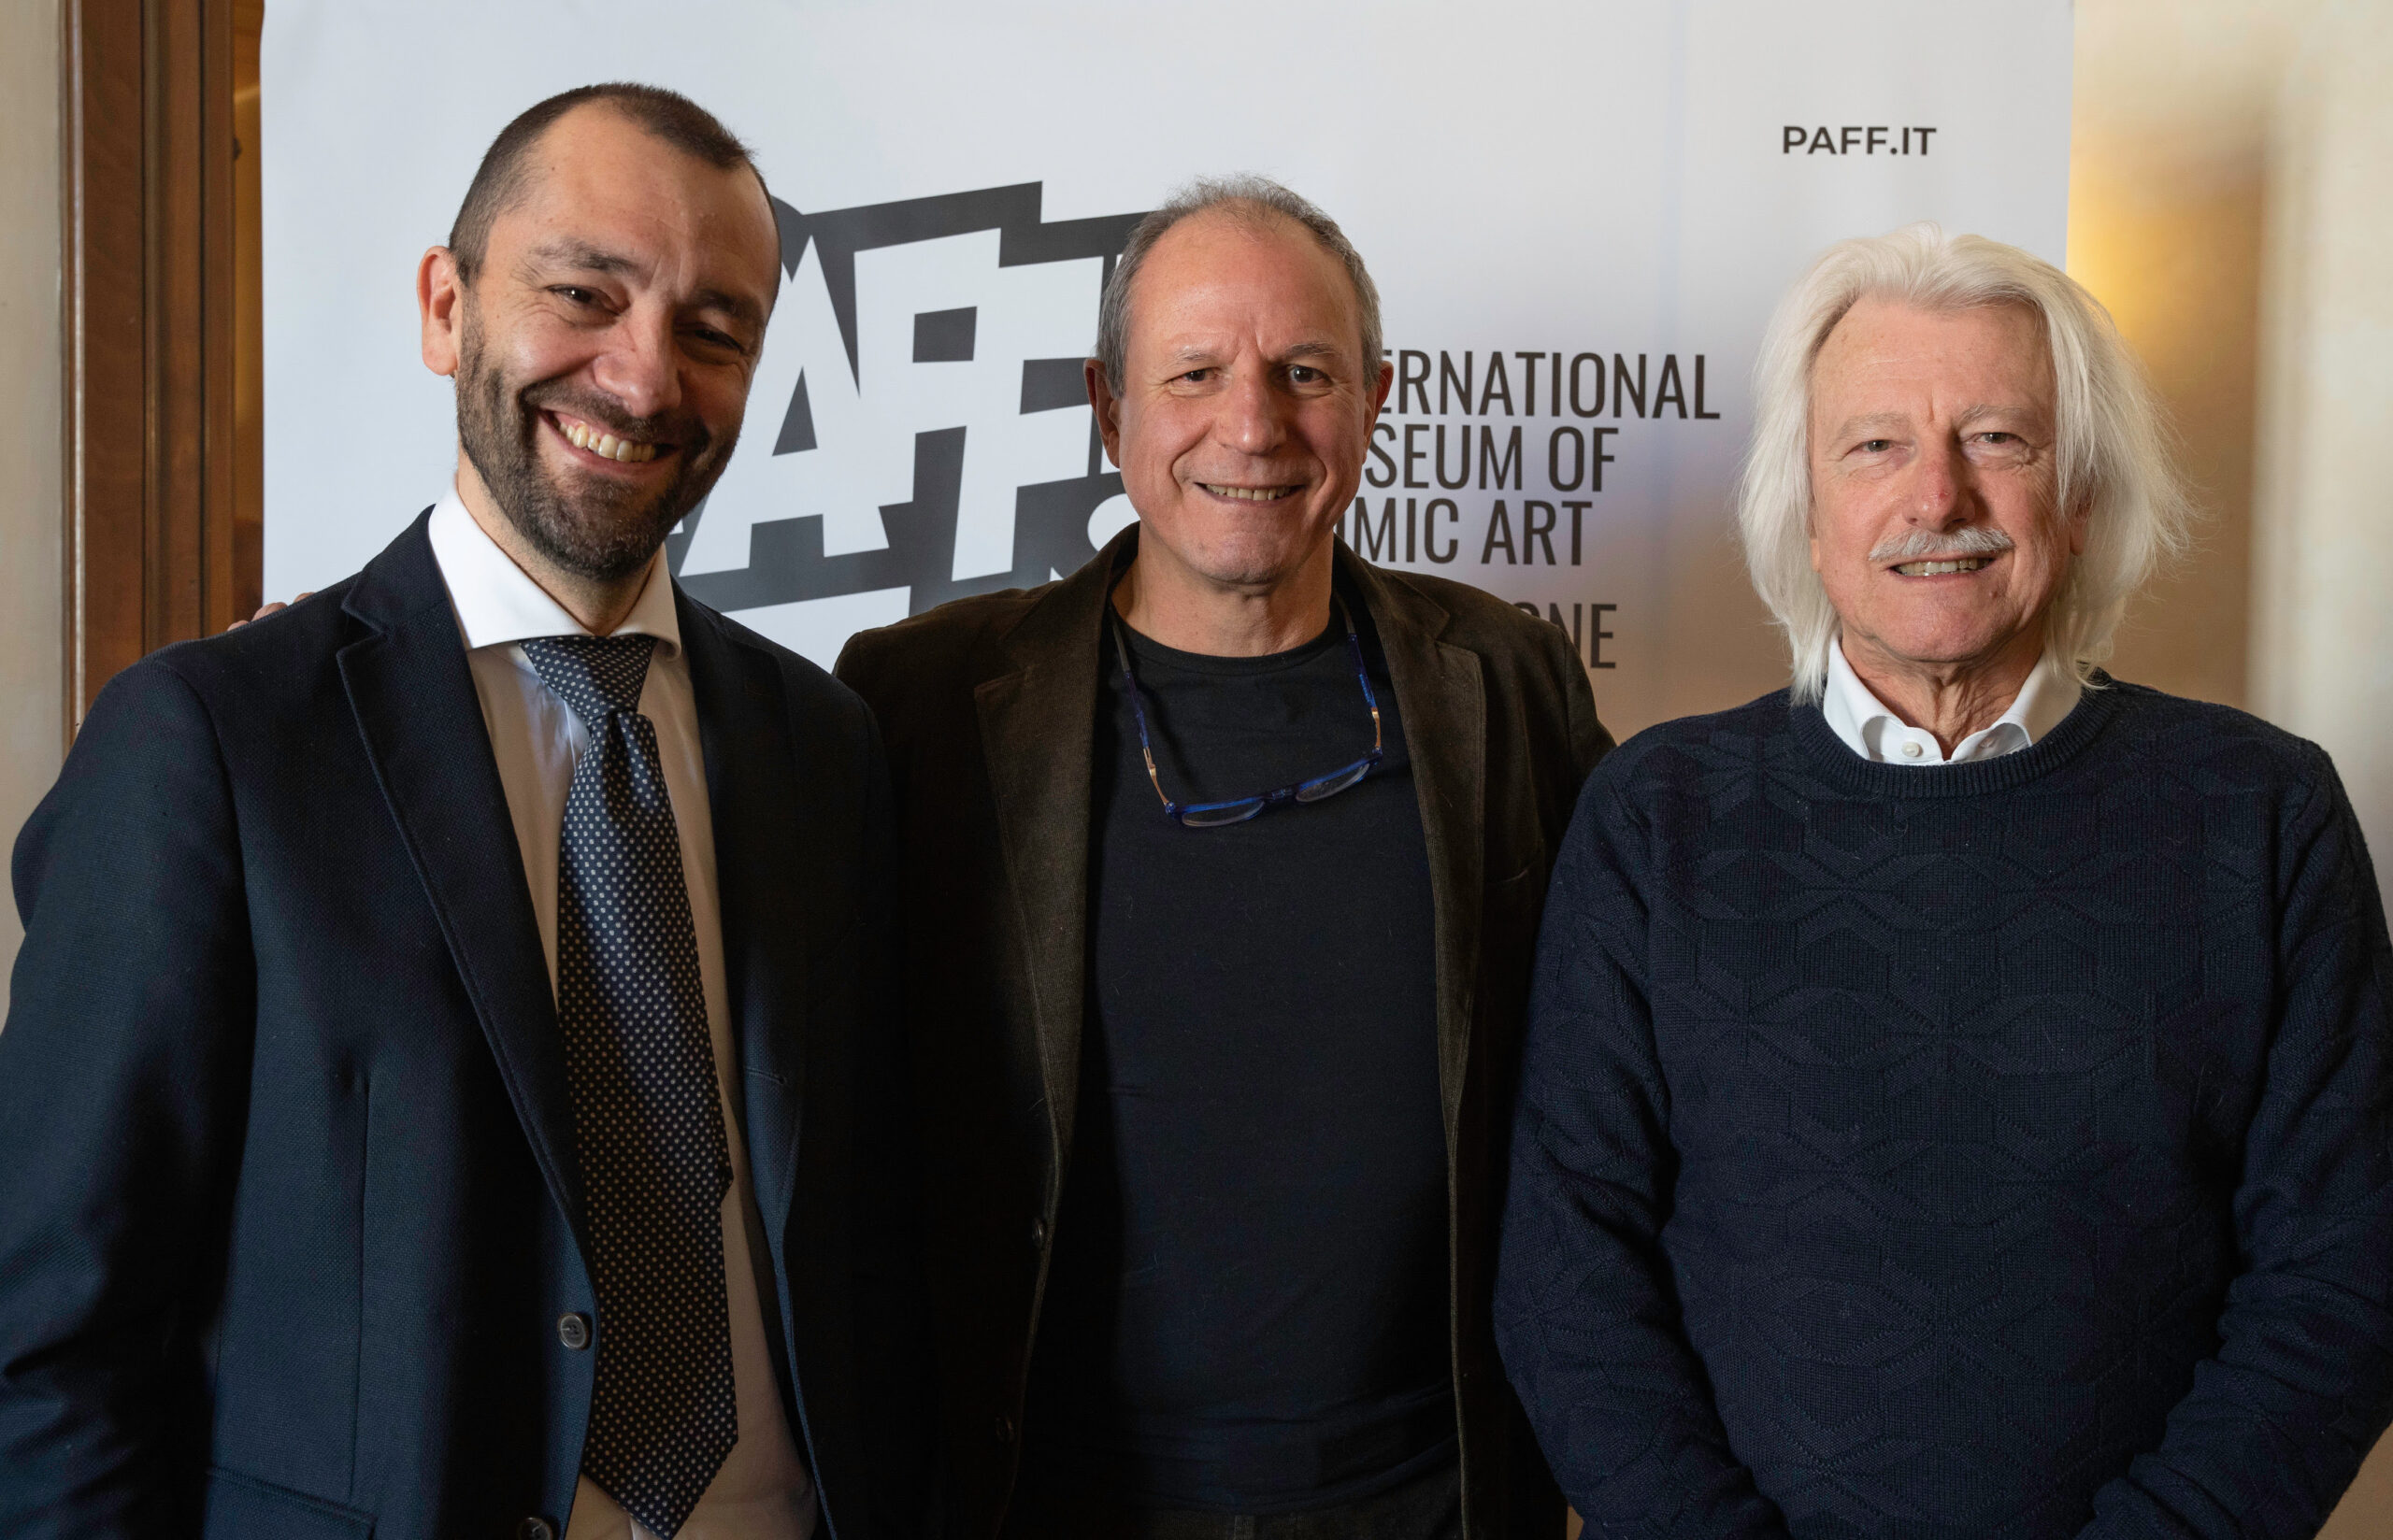 Il PAFF! (Palazzo Arti Fumetto Friuli) allarga il proprio orizzonte e diventa International Museum of Comic Art. Inaugurazione ufficiale il 10 marzo.